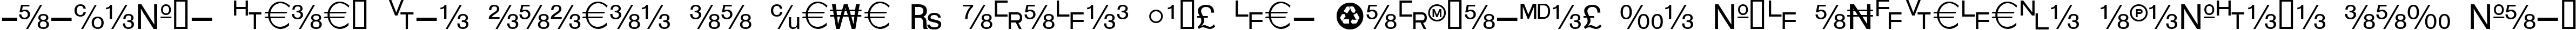 Пример написания шрифтом WP TypographicSymbols текста на испанском